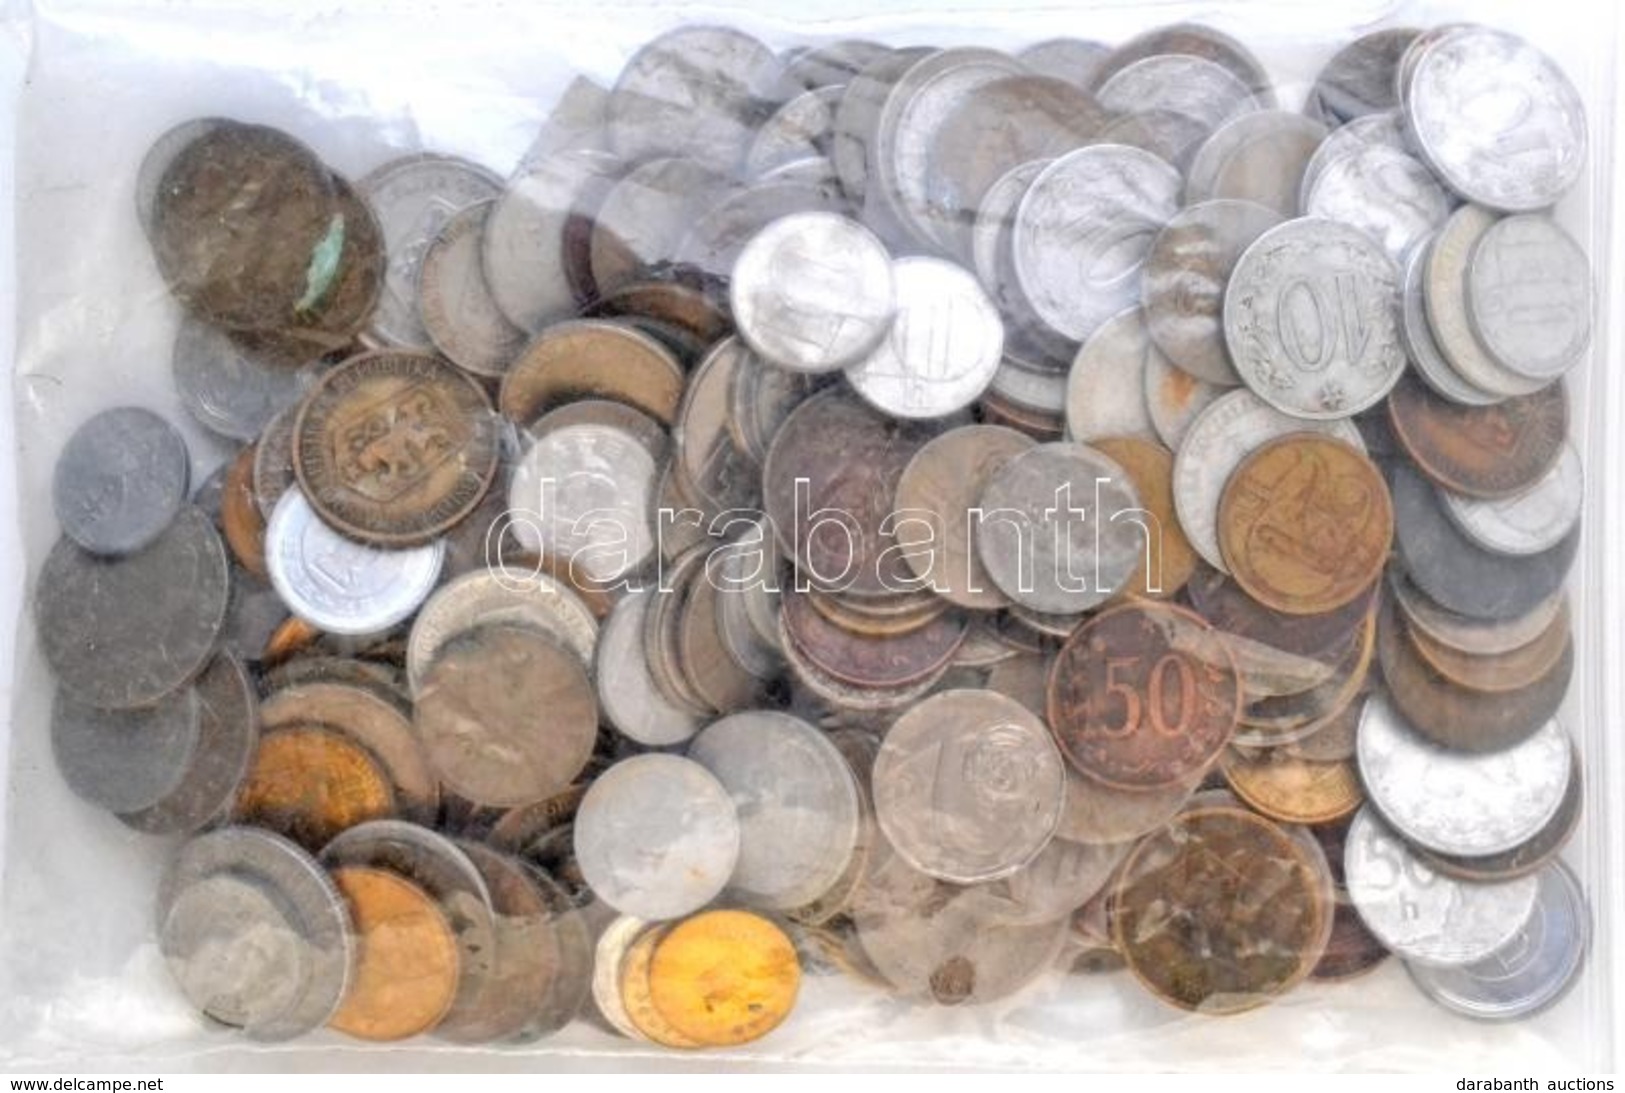 Csehszlovákia Vegyes Fémpénz Tétel ~0,6kg-os Súlyban T:vegyes
Czechoslovakia Mixed Lot Of Metal Coins In ~0,6kg Weight C - Unclassified